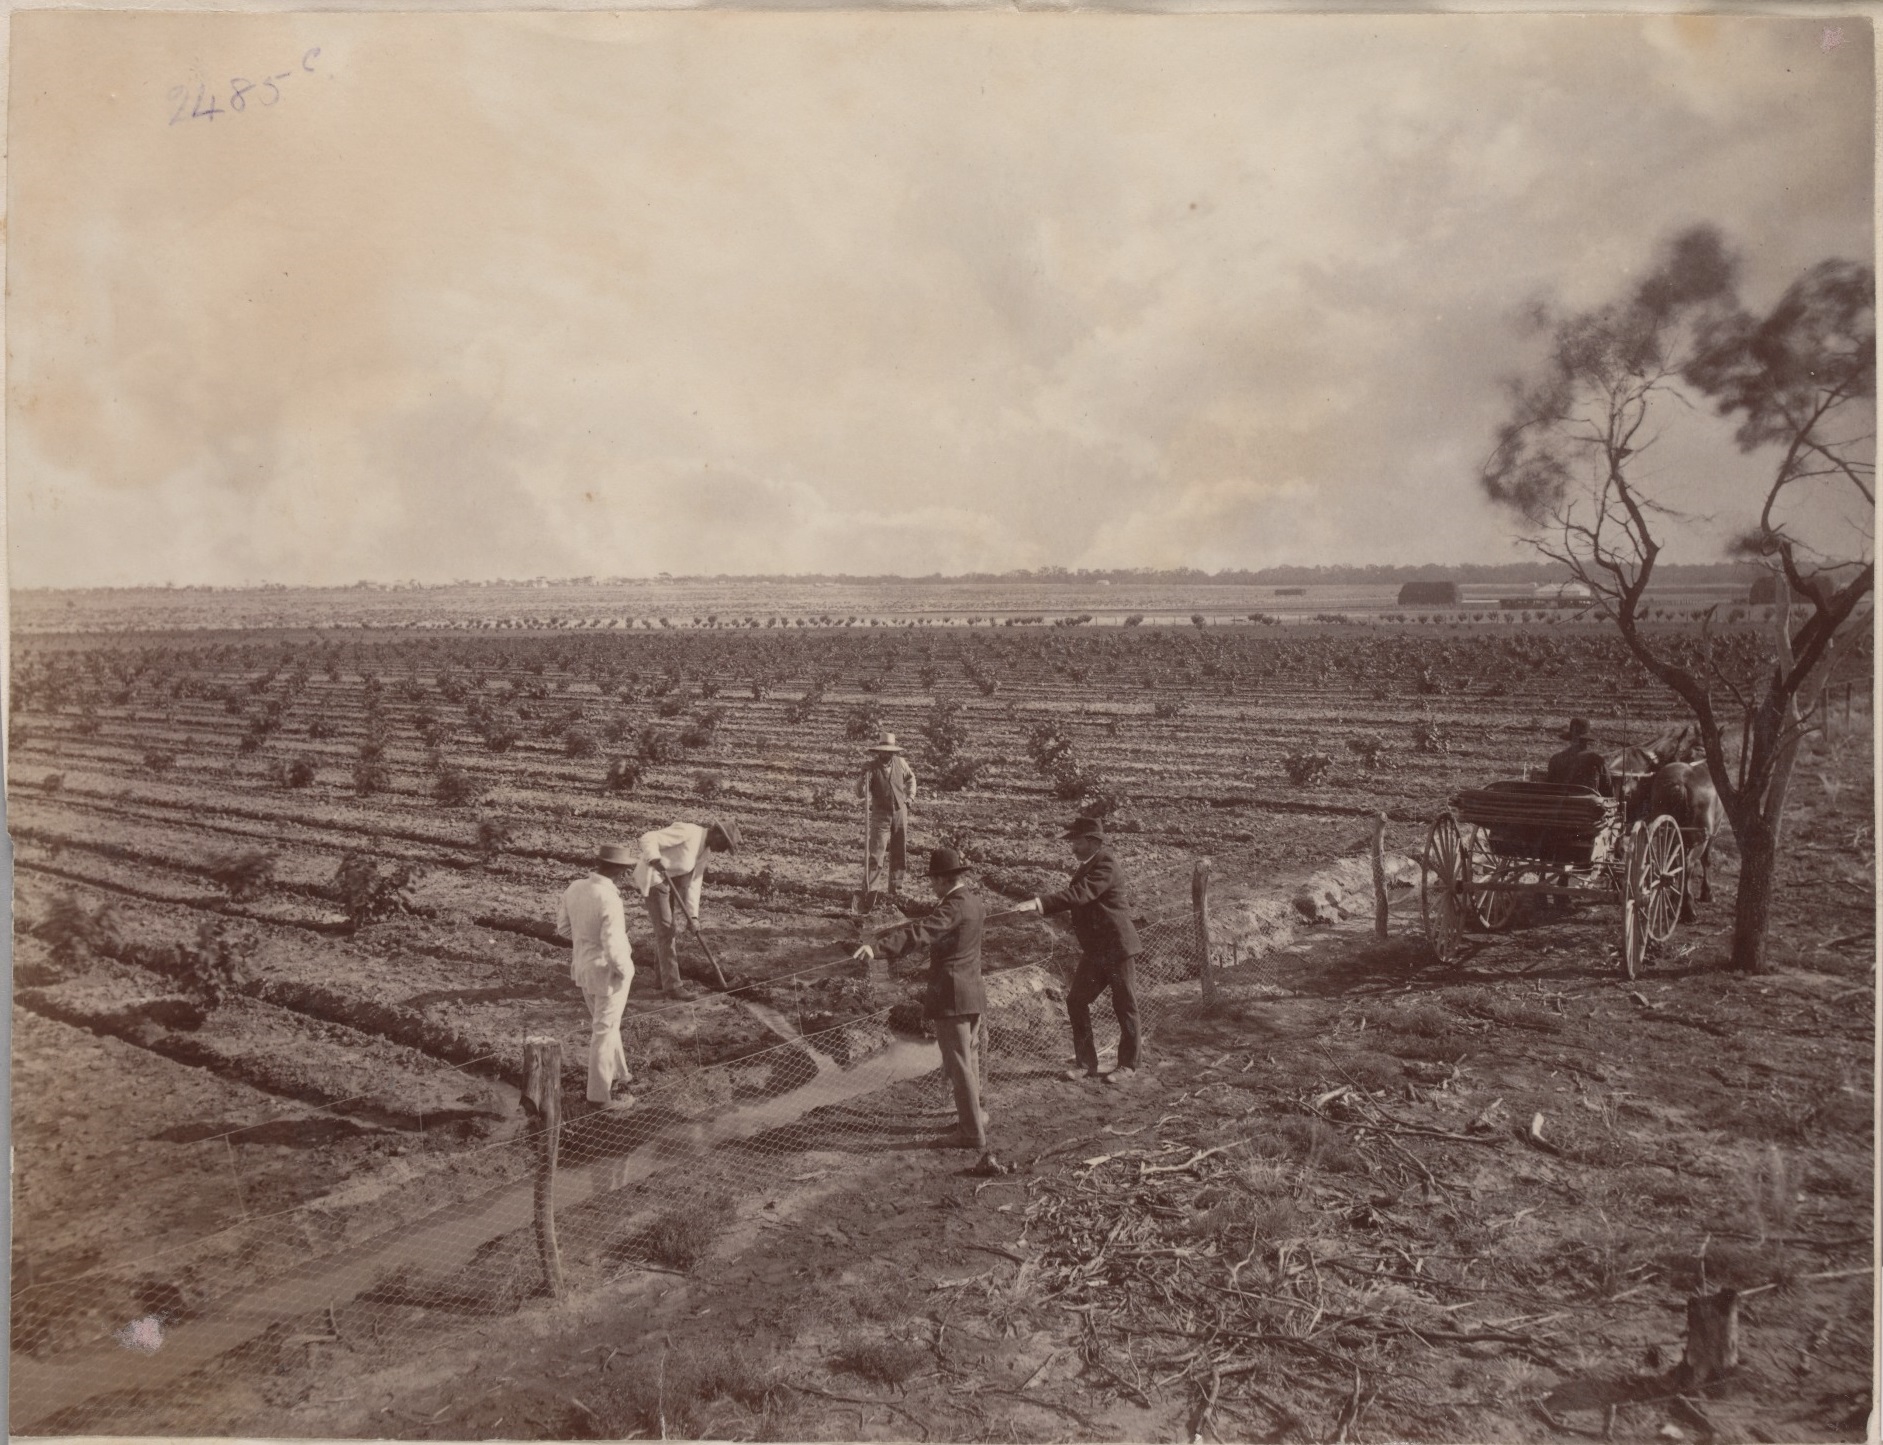 Mildura orchards, 1890, by JW Lindt